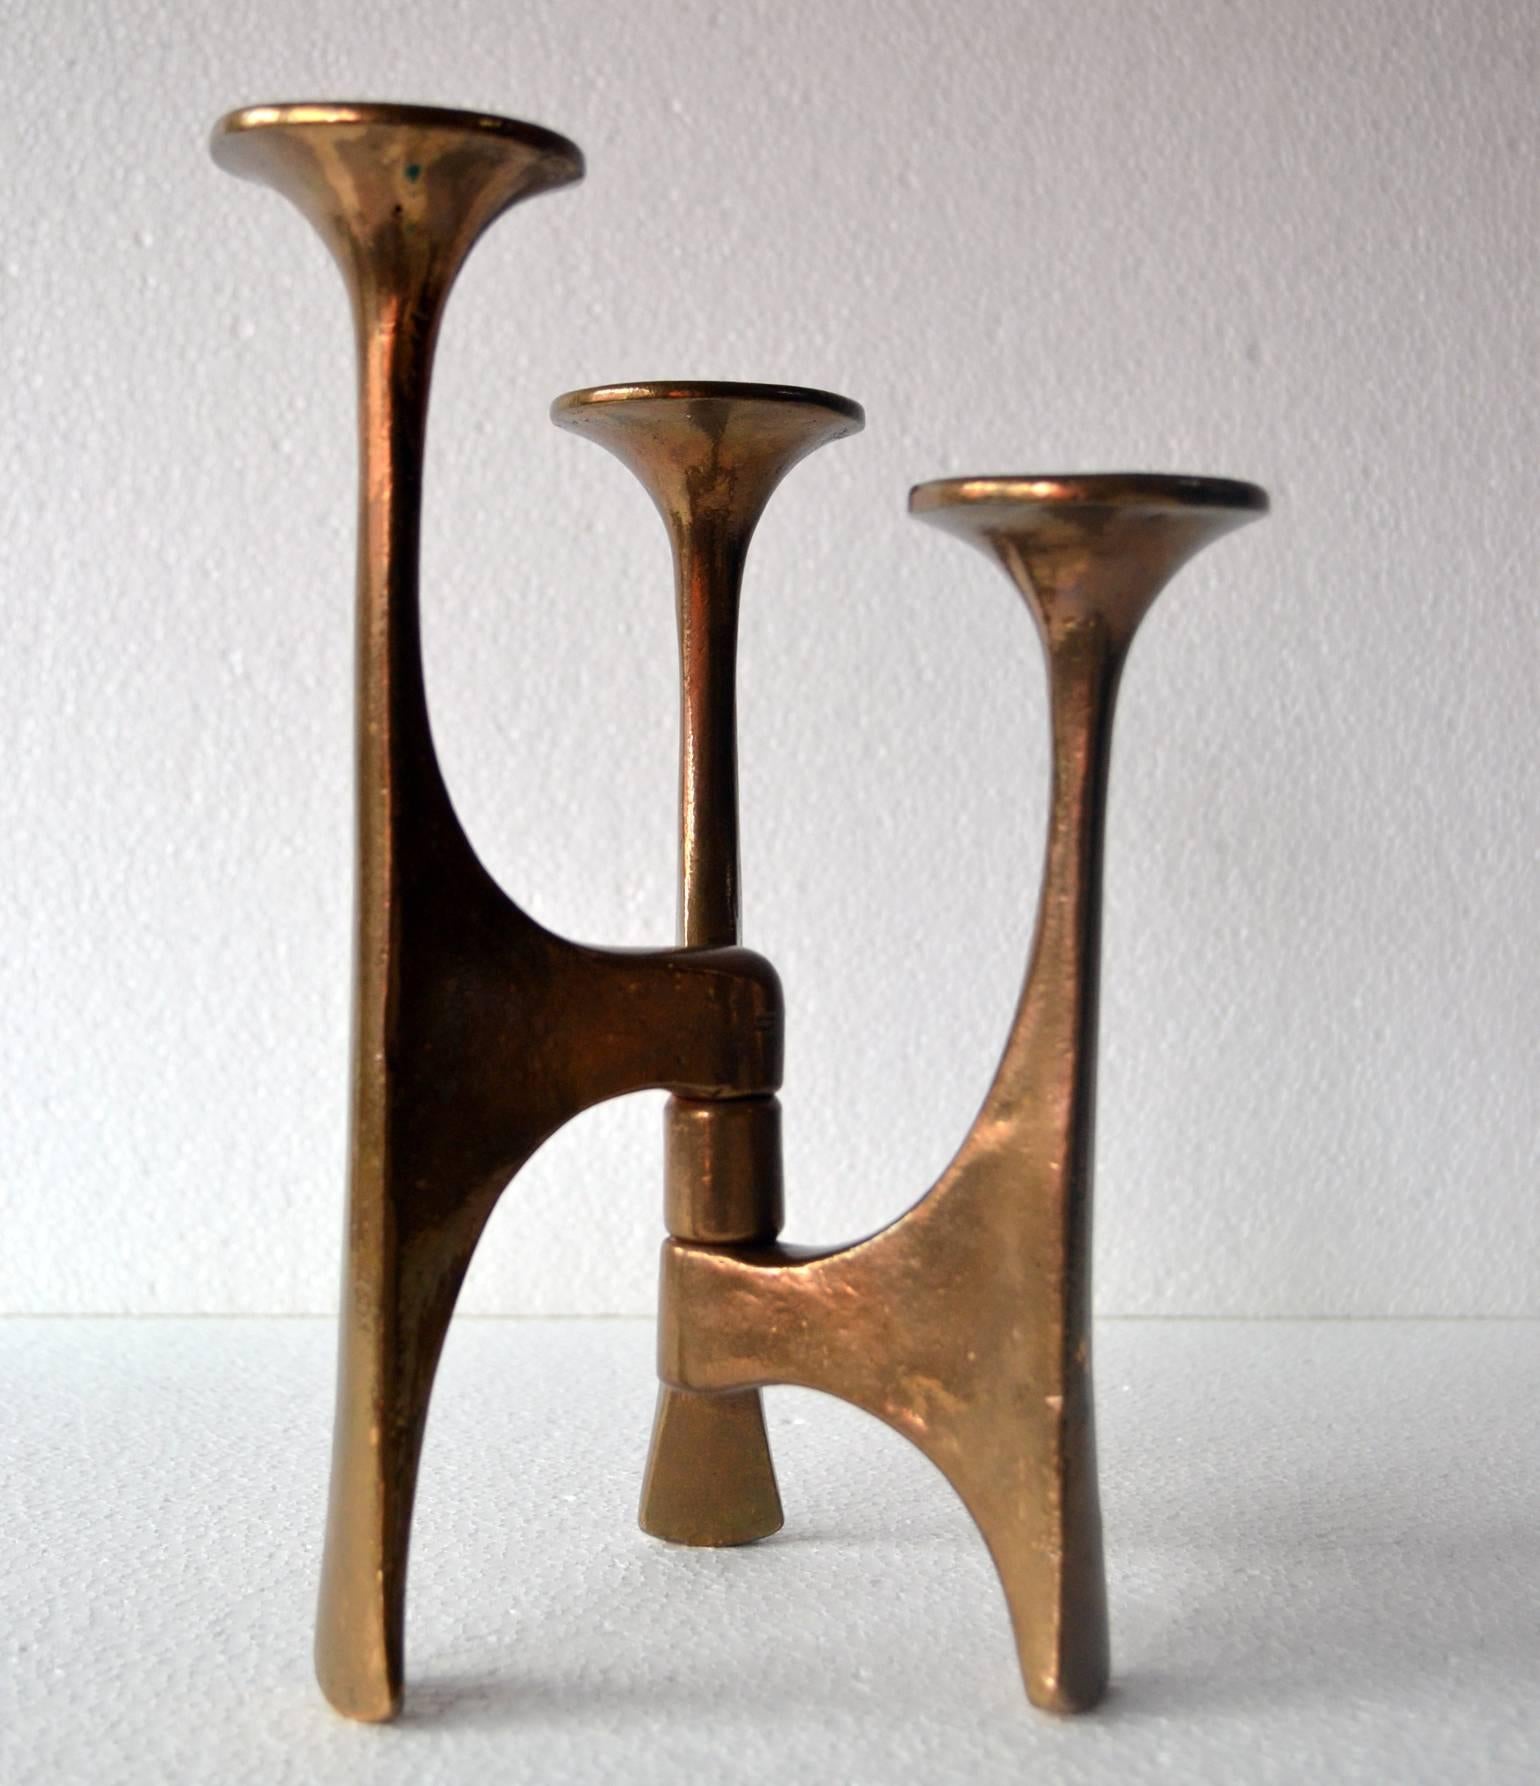 Sculptural Mid-Century Modern Bronze Candleholder with Three Arms (Moderne der Mitte des Jahrhunderts)